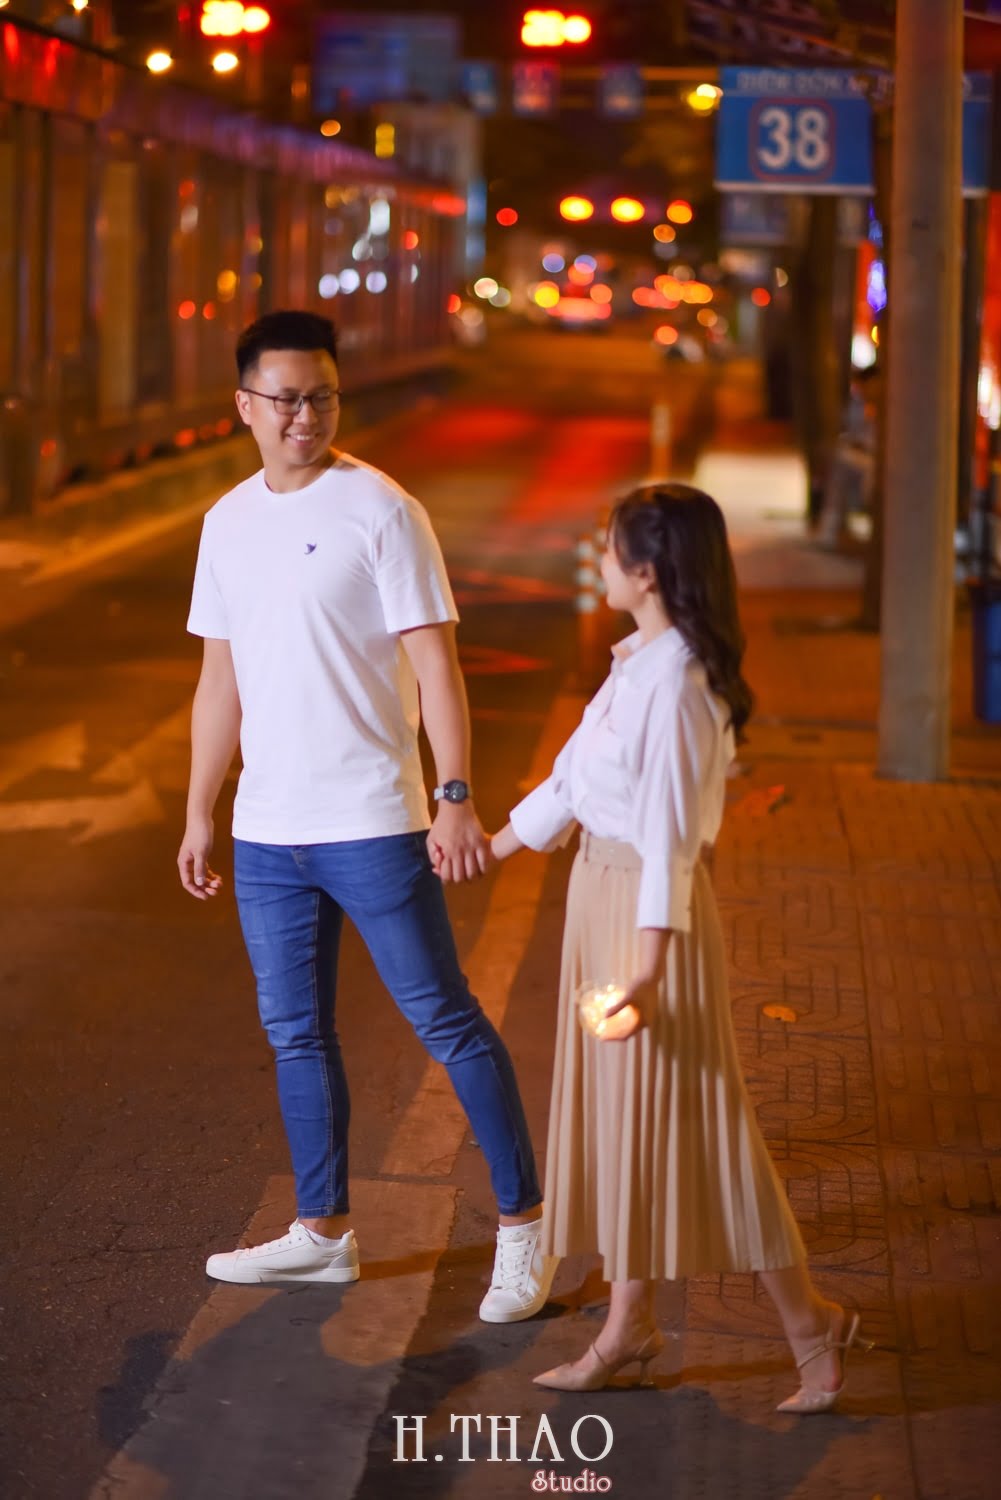 Anh chup couple ban dem 13 min - #2 Ý tưởng chụp ảnh ban đêm đẹp lung linh – HThao Studio